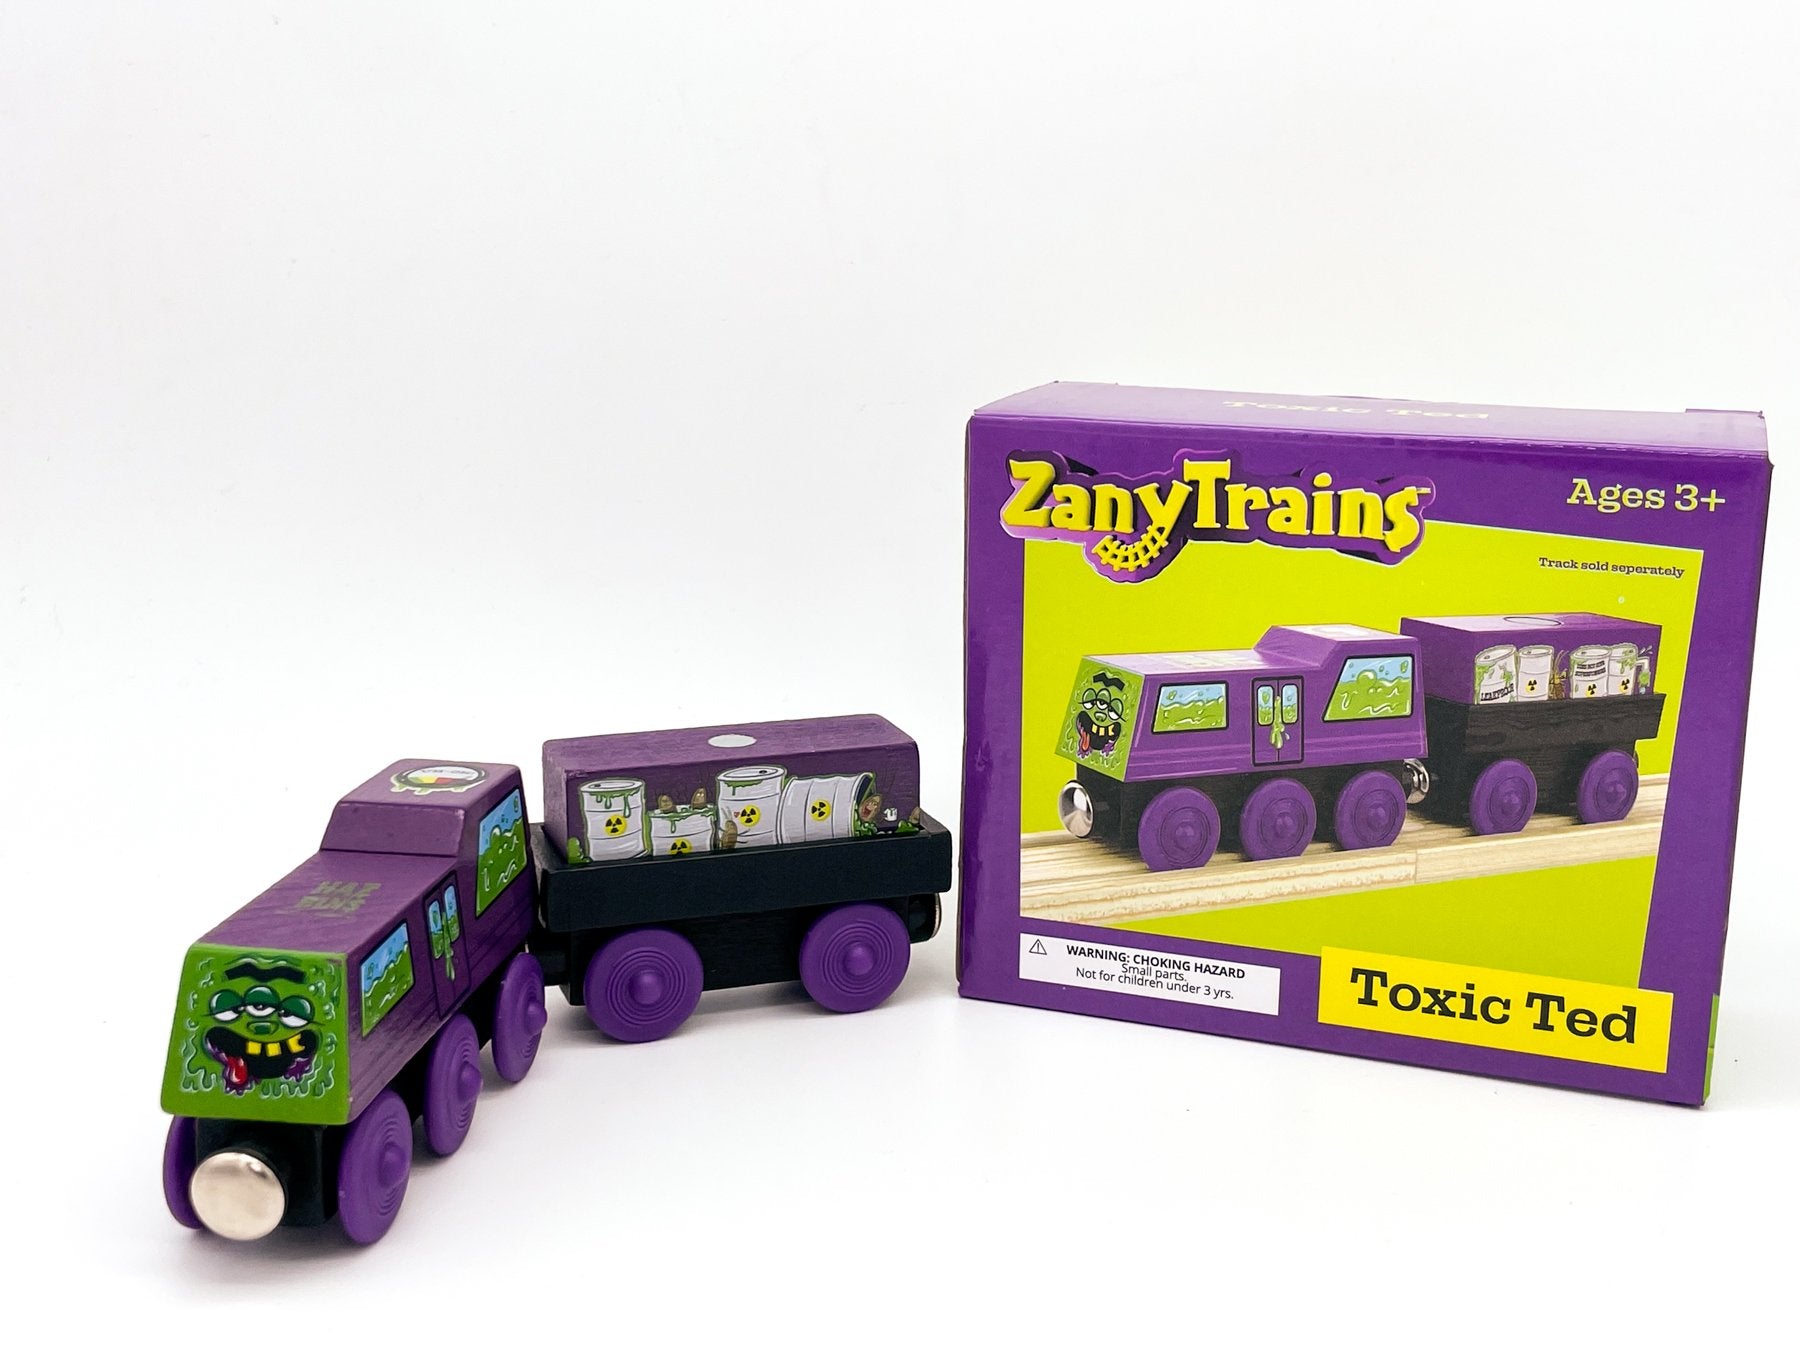 Toxic Ted - Zany Trains